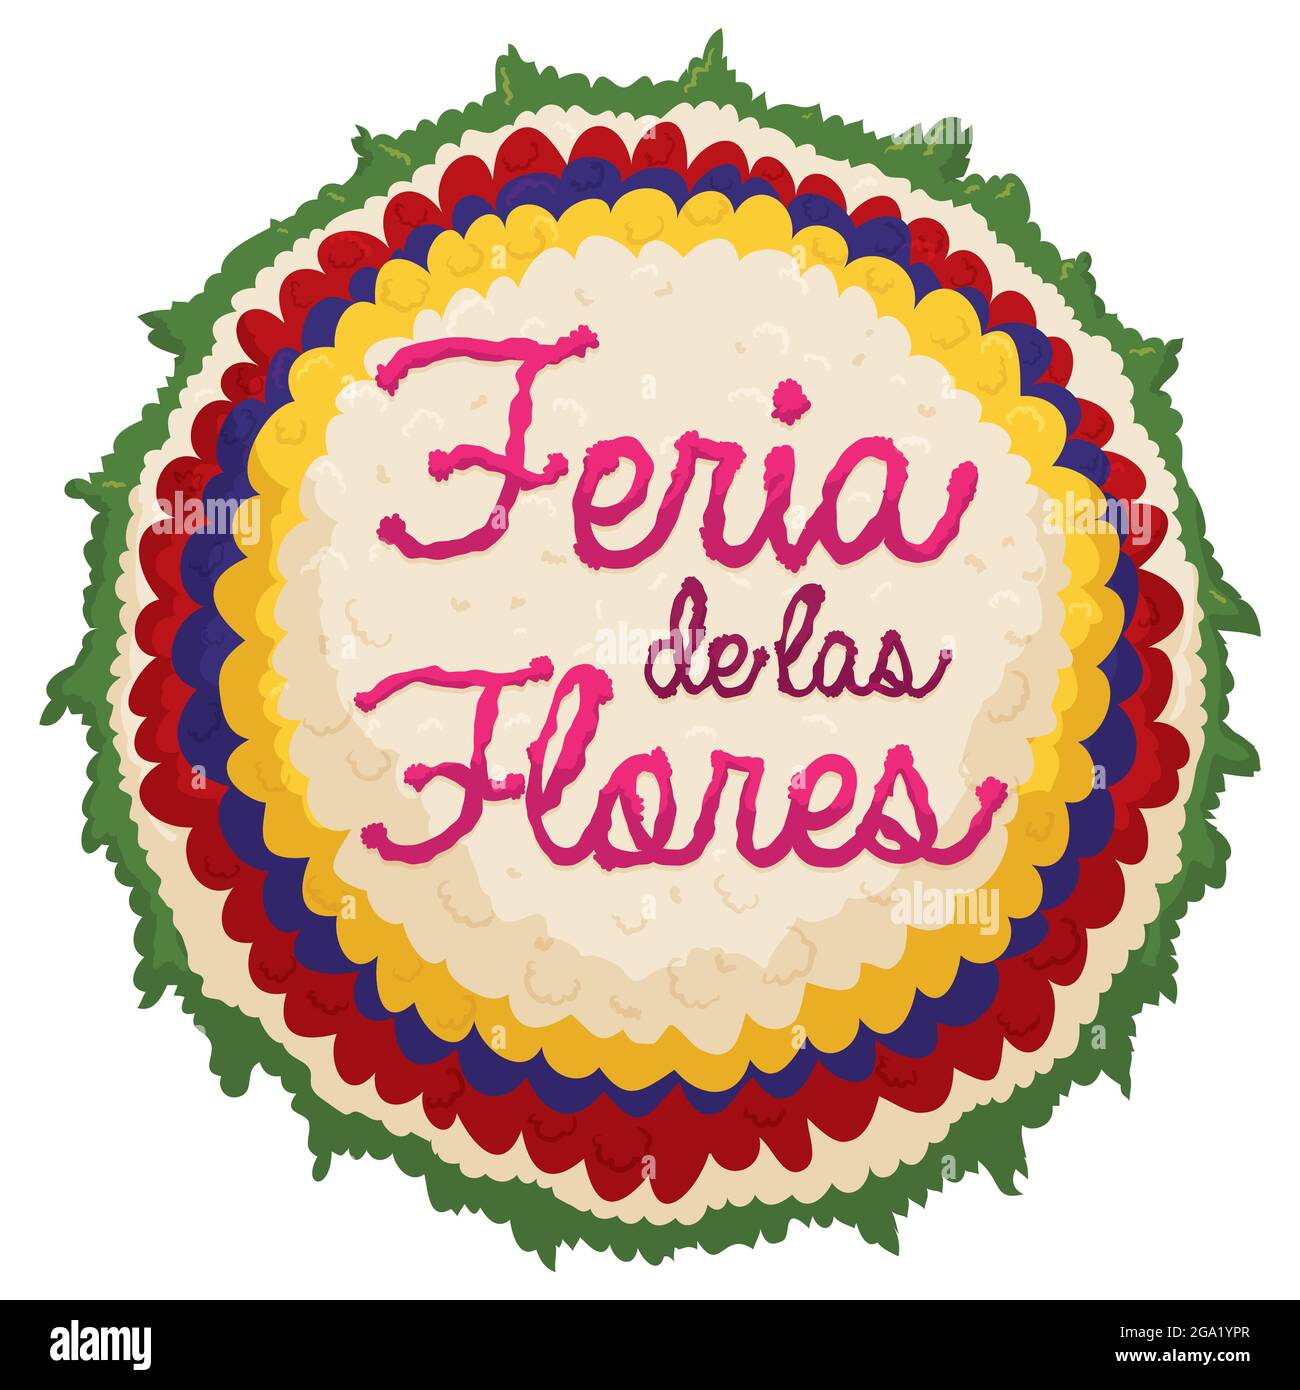 Traditionelles rundes Silleta-Design mit kolumbianischen Flaggen-Farben und Text zum Gedenken an das Blumenfest oder die Feria de las Flores in S Stock Vektor